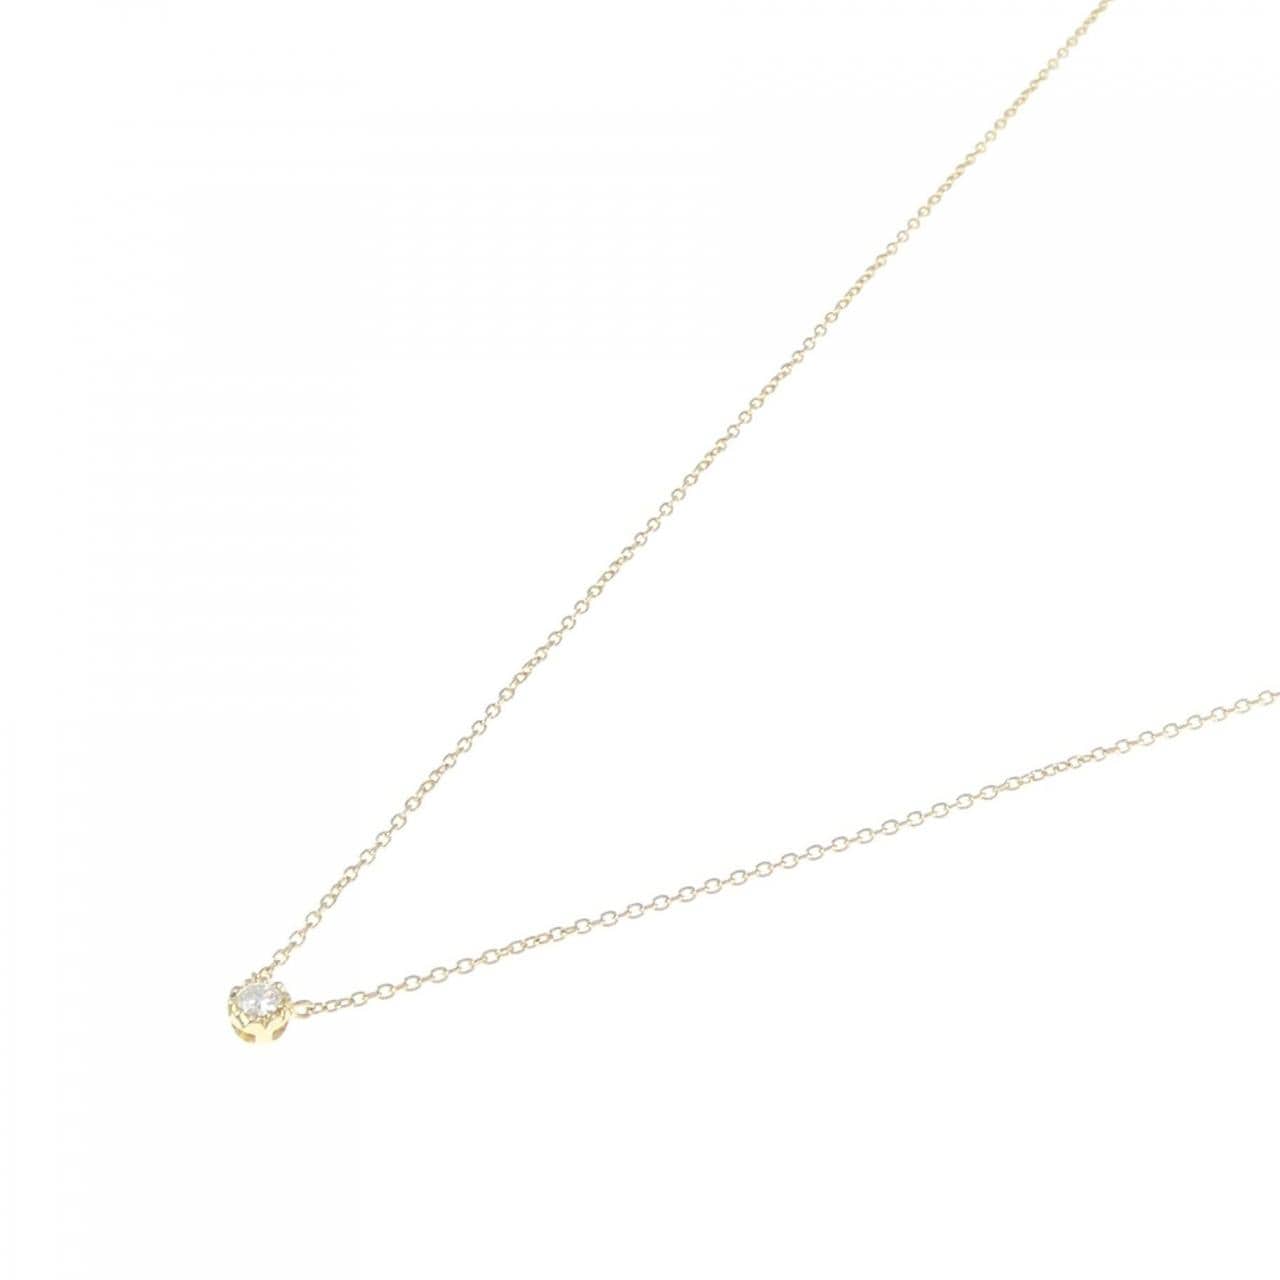 STAR JEWELRY Diamond necklace 0.05CT